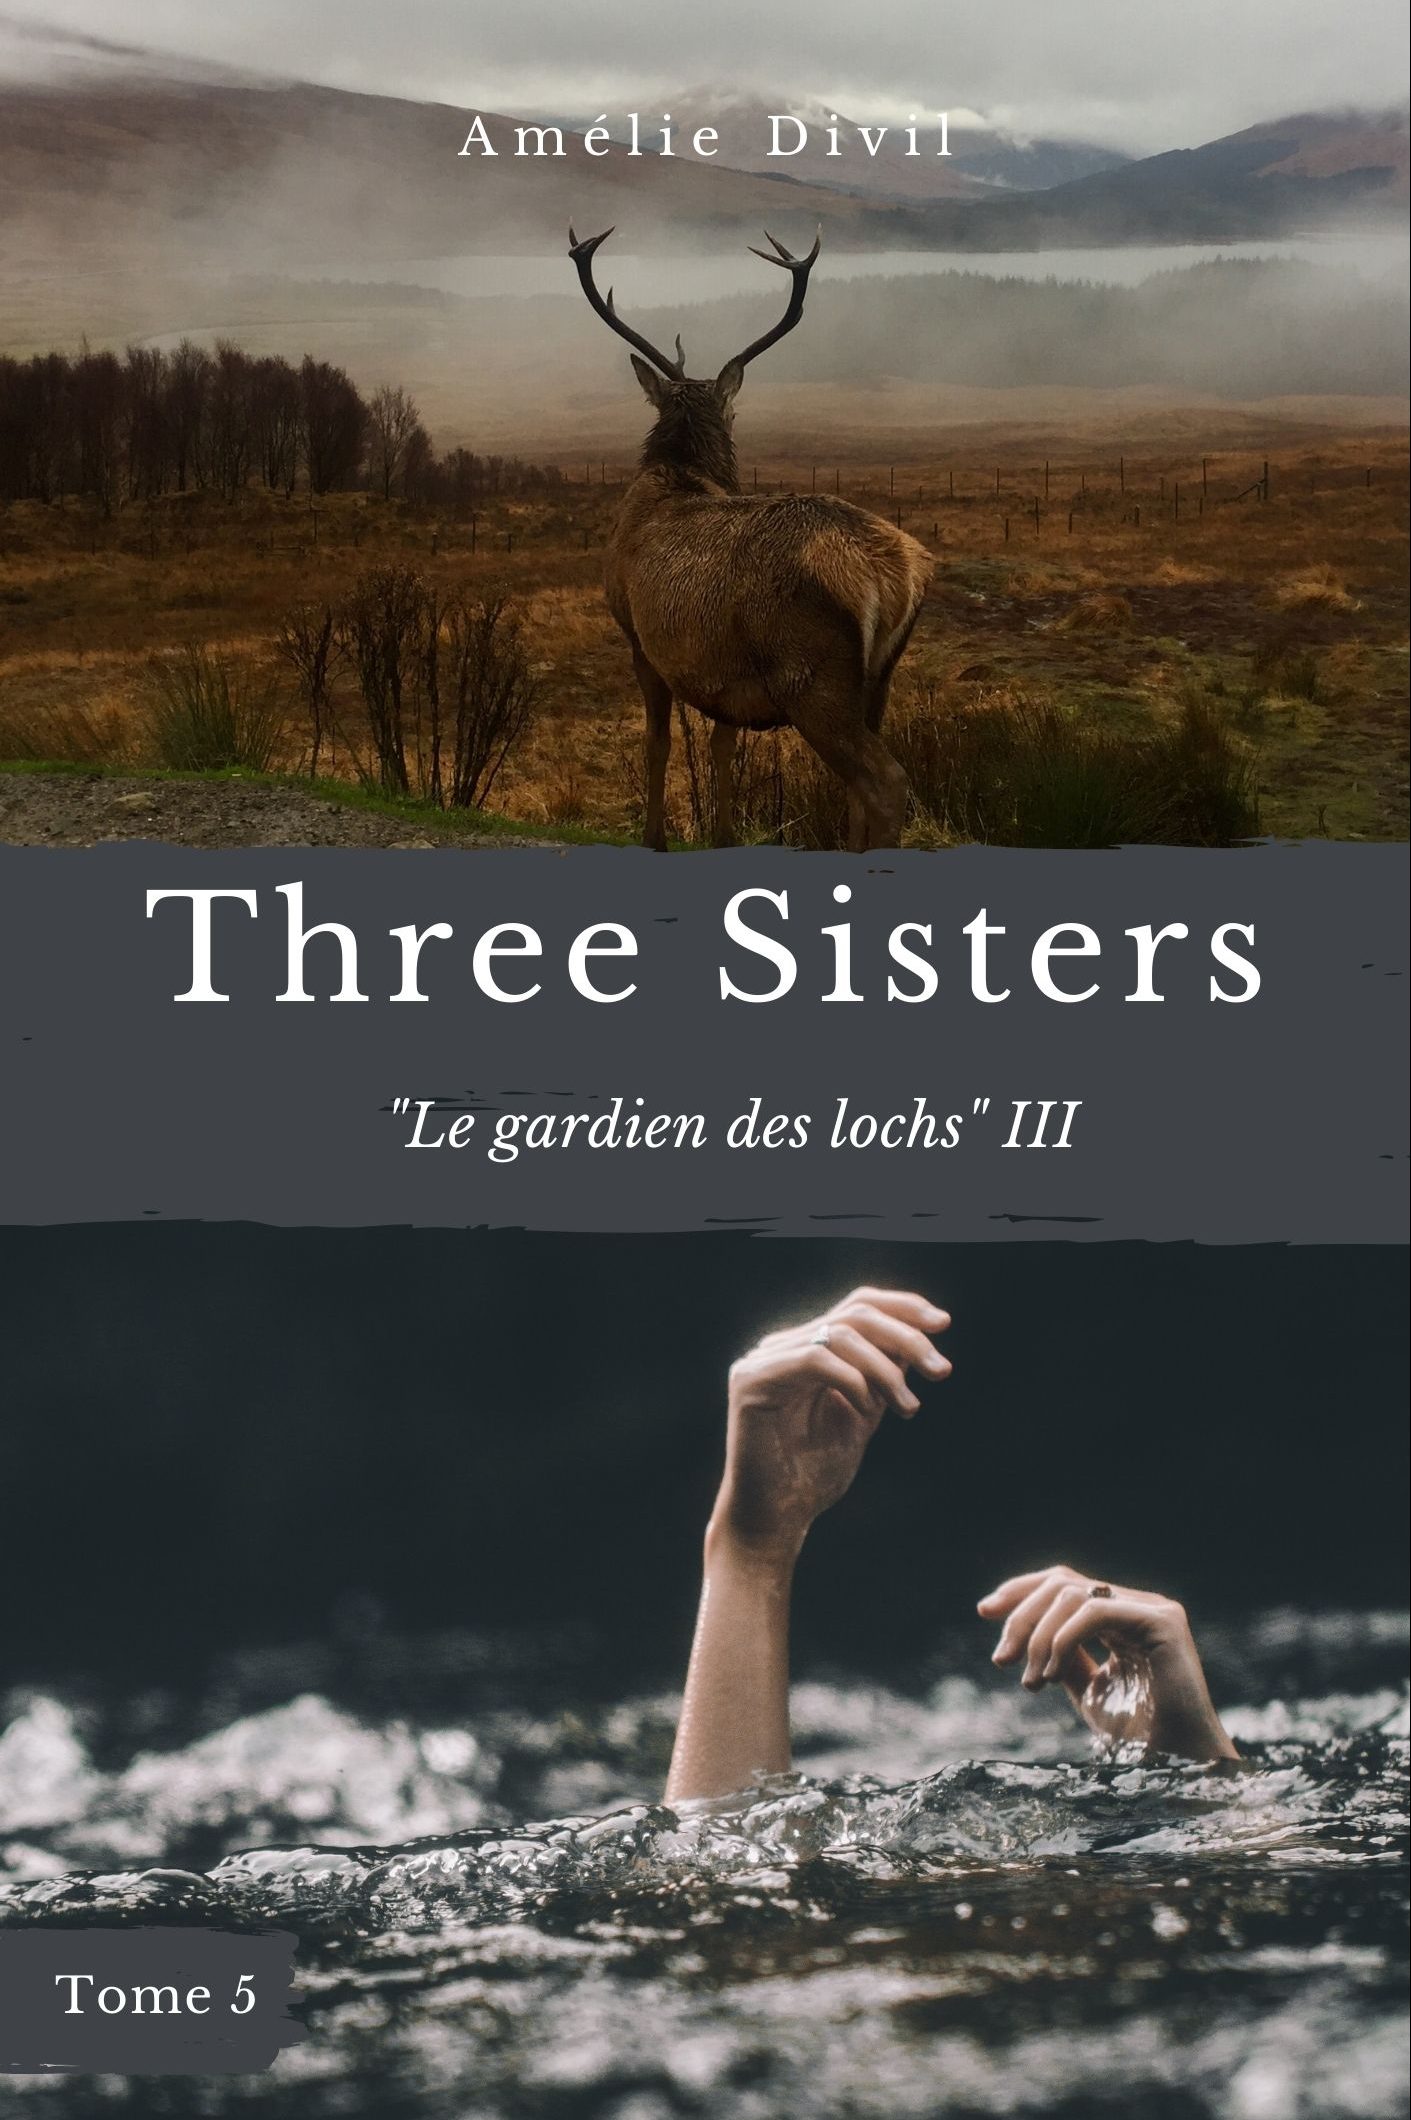 Le gardien des loch III – Tome 5 Three Sisters